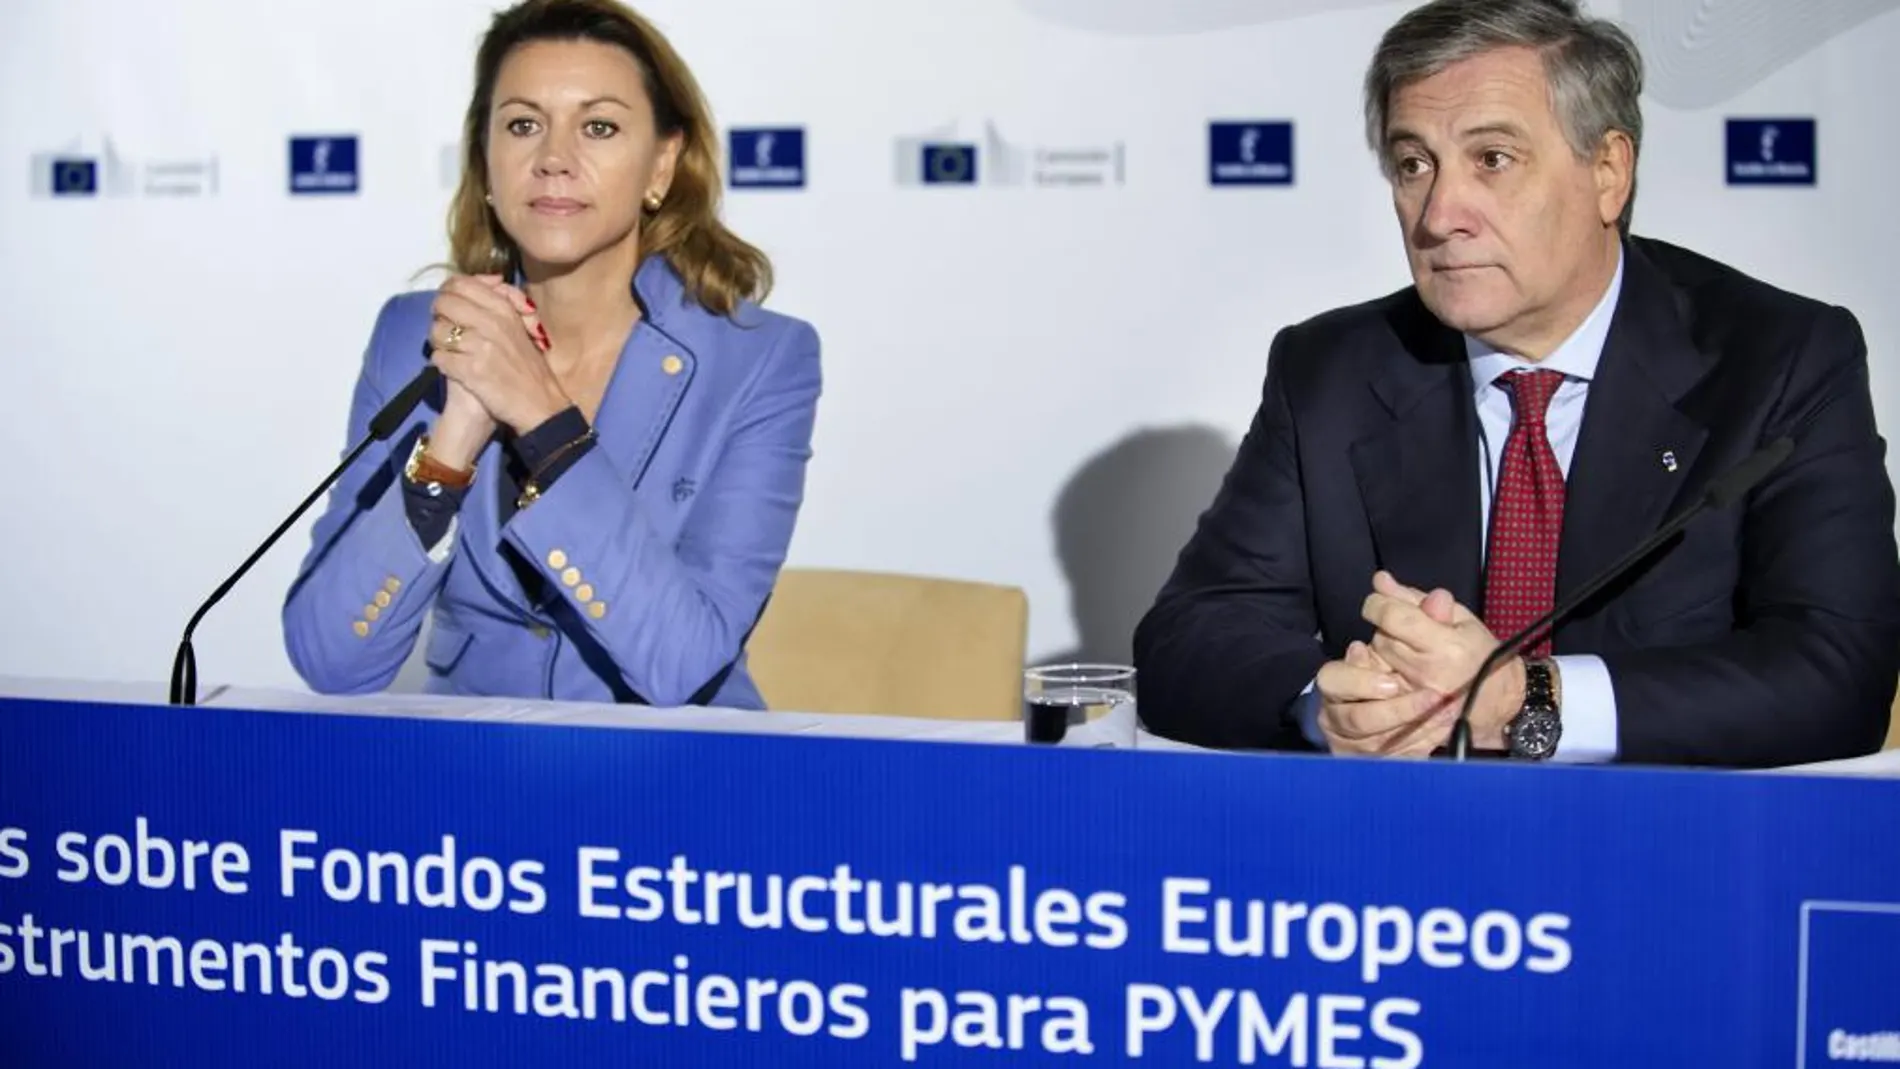 La presidenta de Castilla-La Mancha, María Dolores de Cospedal (i), y el vicepresidente de la Comisión Europea, Antonio Tajani (d), durante la jornada sobre los Fondos Estructurales Europeos